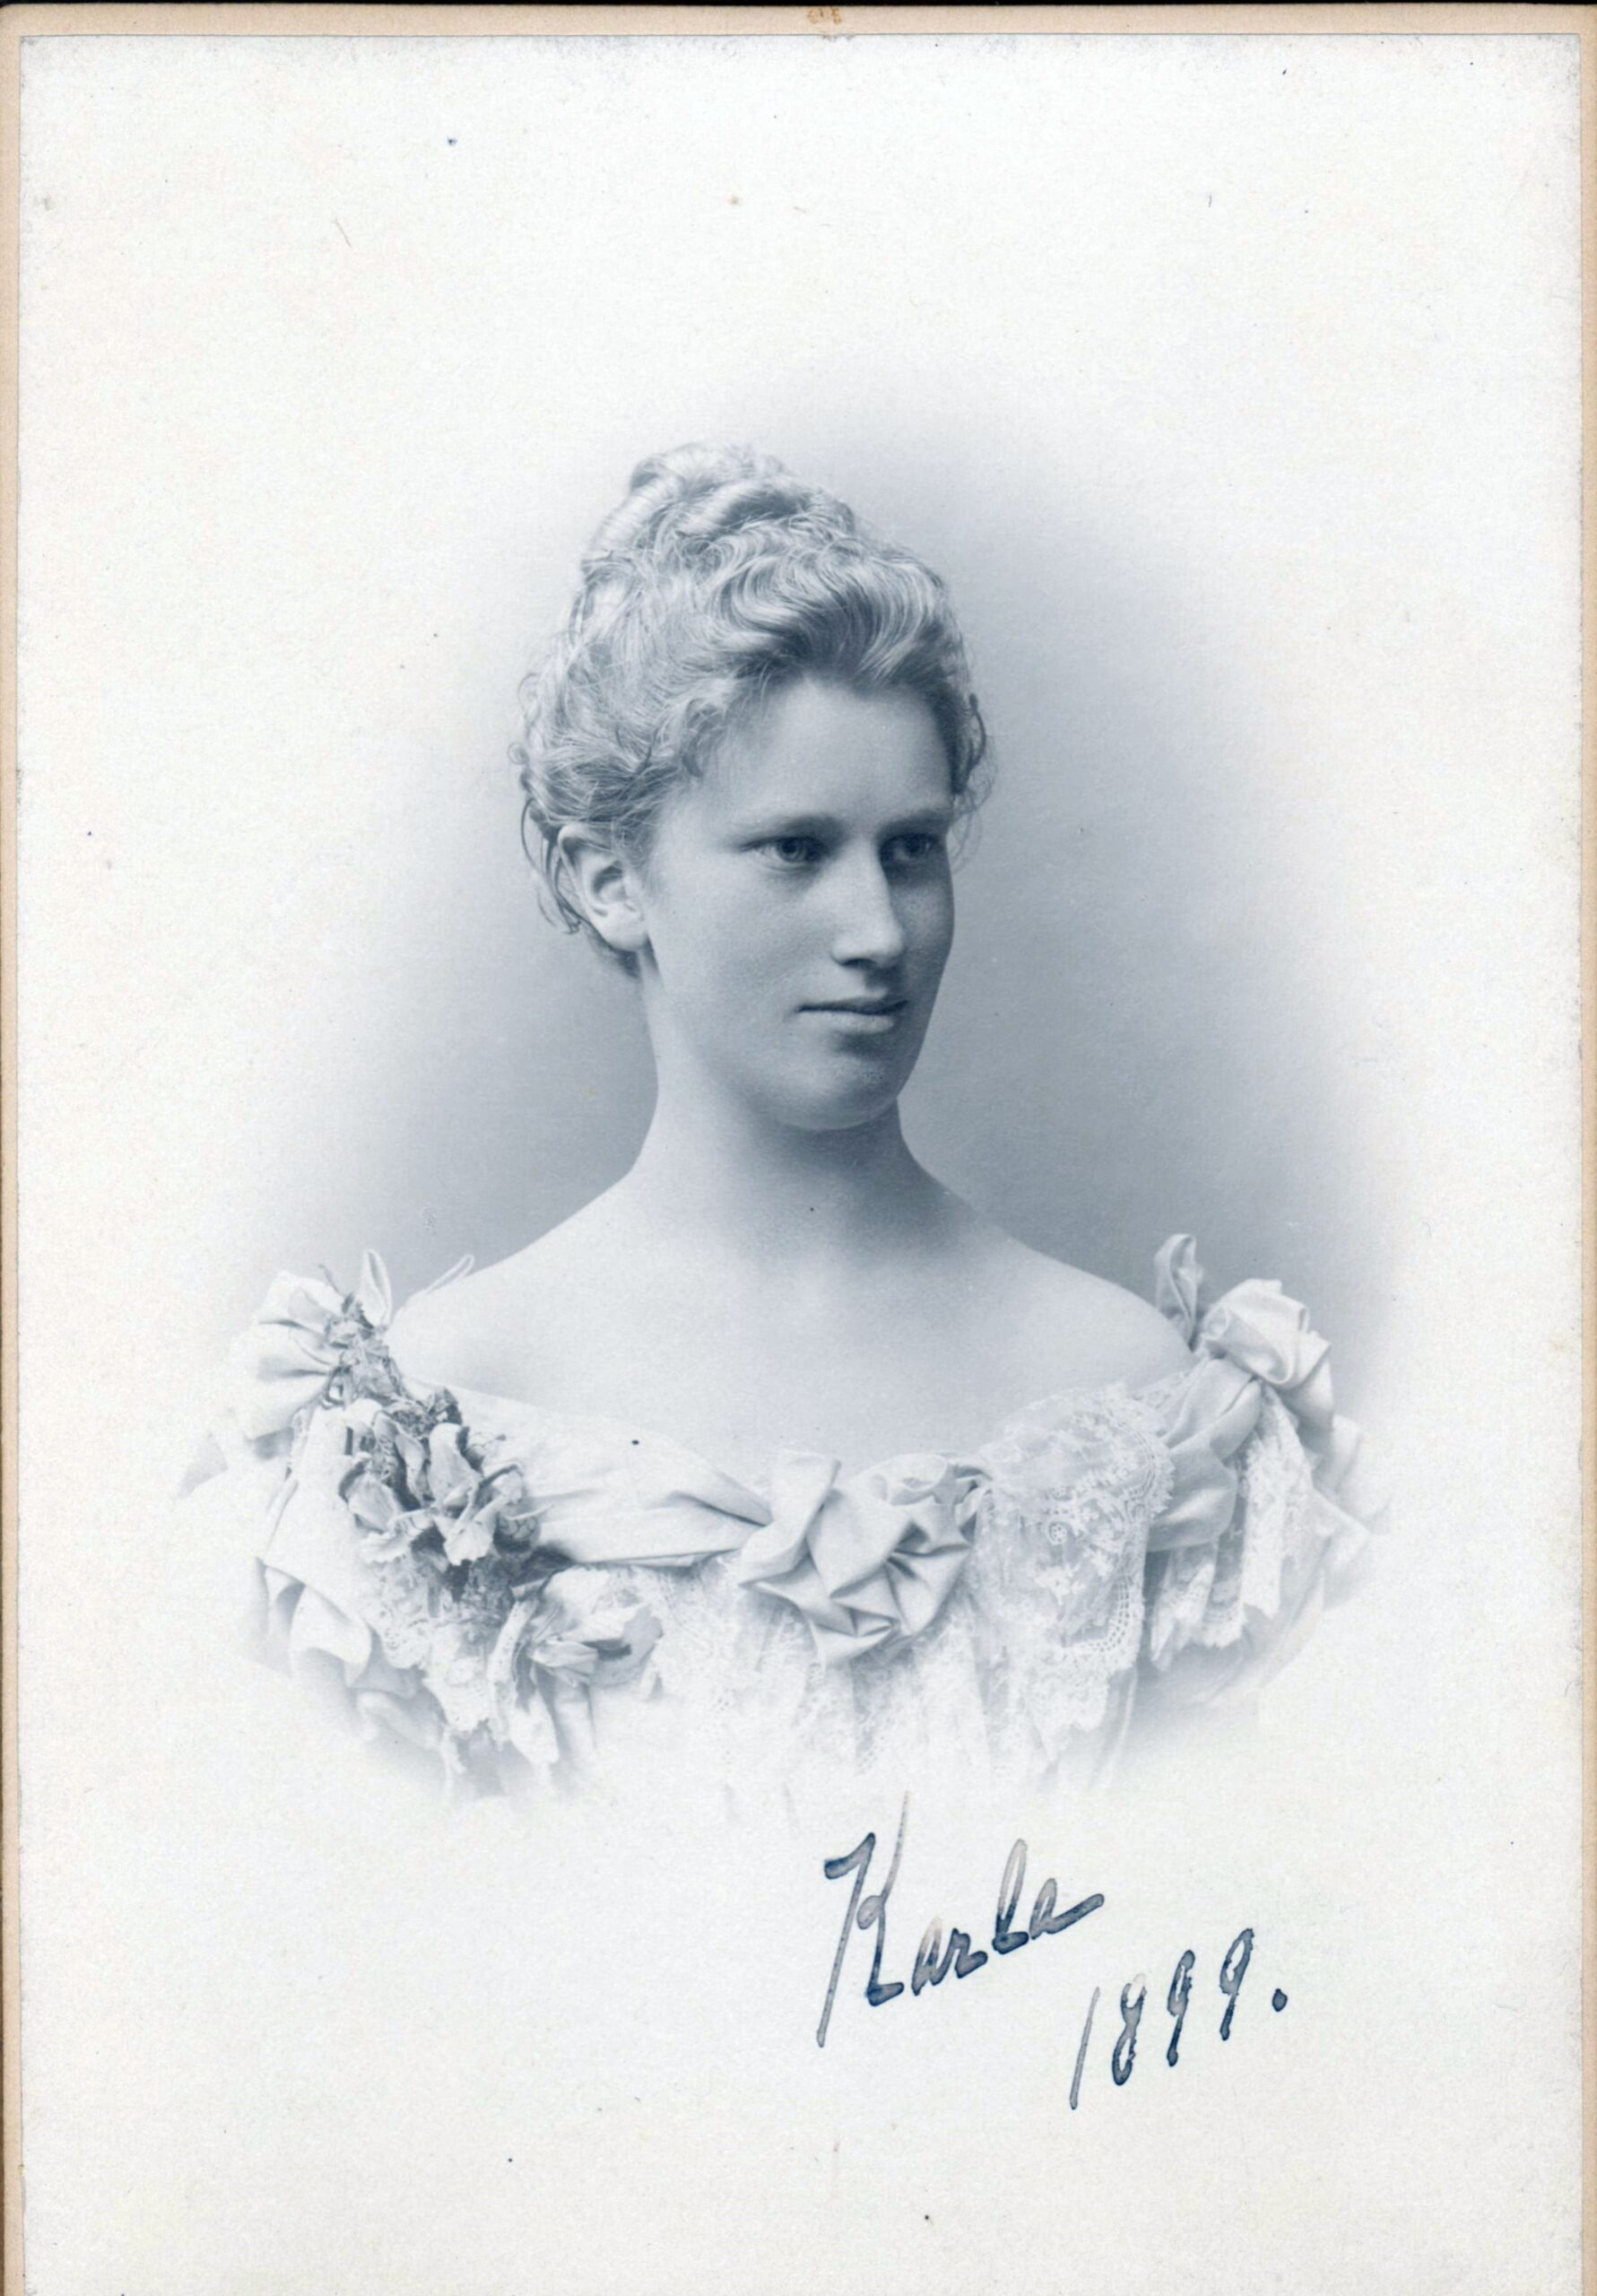 75.75 Carla Borch, f. 12.2. 1877 søster til Olaf Georg. Fotograf Carl Sonne, Gothersgade 45, København. Dateret januar 1899